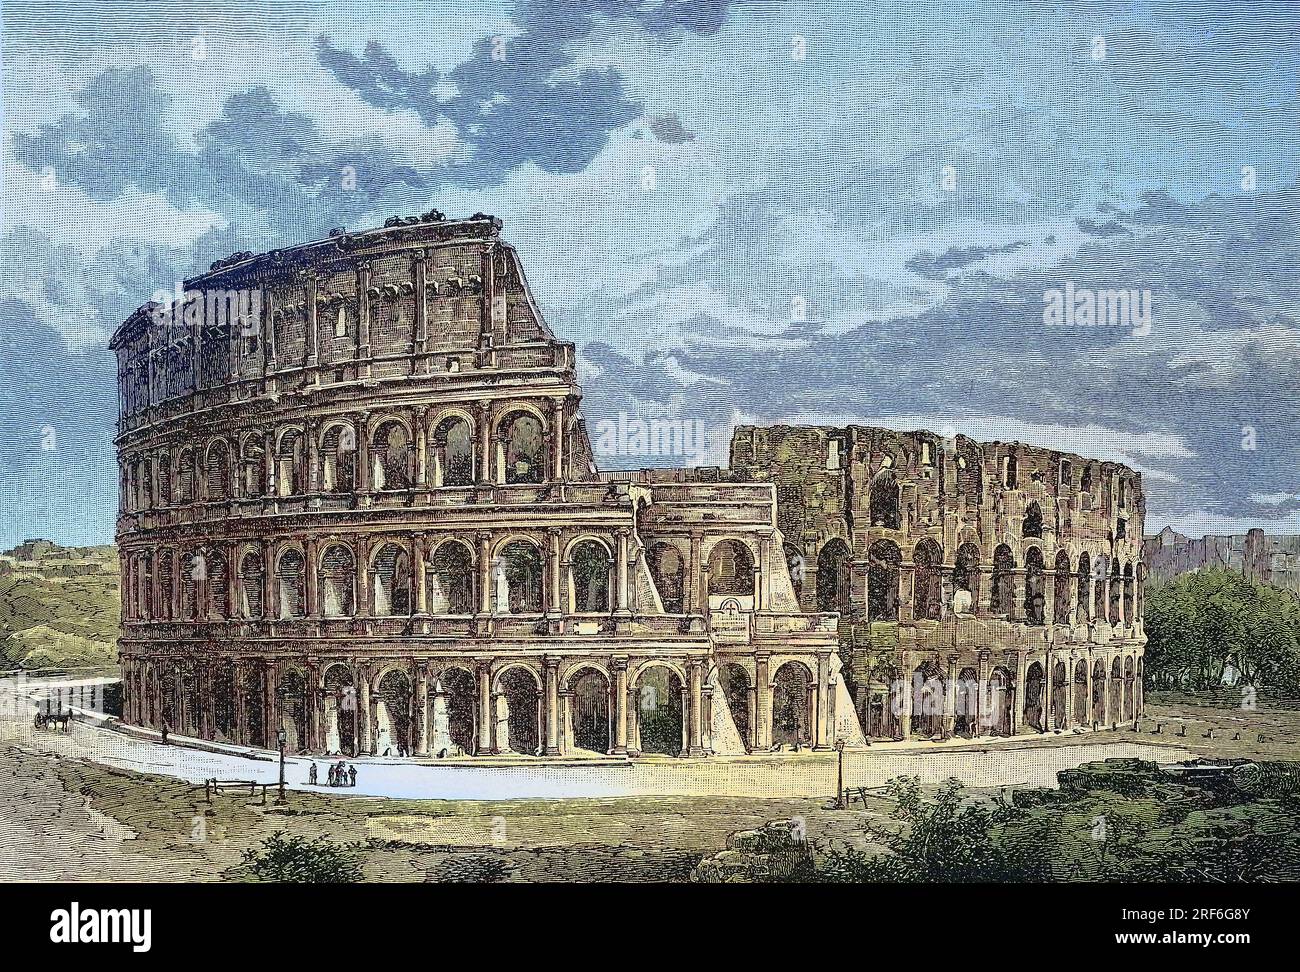 DAS Kolosseum oder Kolosseum, auch bekannt als Flavisches Amphitheater, lateinisch Amphitheatrum Flavium, italienisch Anfiteatro Flavio oder Colosseo, ist ein ovales Amphitheater im Zentrum der Stadt Rom, Italien, digitale verbesserte Reproduktion eines Originaldrucks aus dem 19. Jahrhundert / il Colosseo o Colosseo, noto anche come Anfiteatro Flavio, in latino Amphitheatrum Flavium, in italiano Anfiteatro Flavio o Colosseo, è un anfiteatro ovale nel centro della città di Roma, Italia, riproduzione digitale migliorata di una stampa originale del XIX secolo Foto Stock